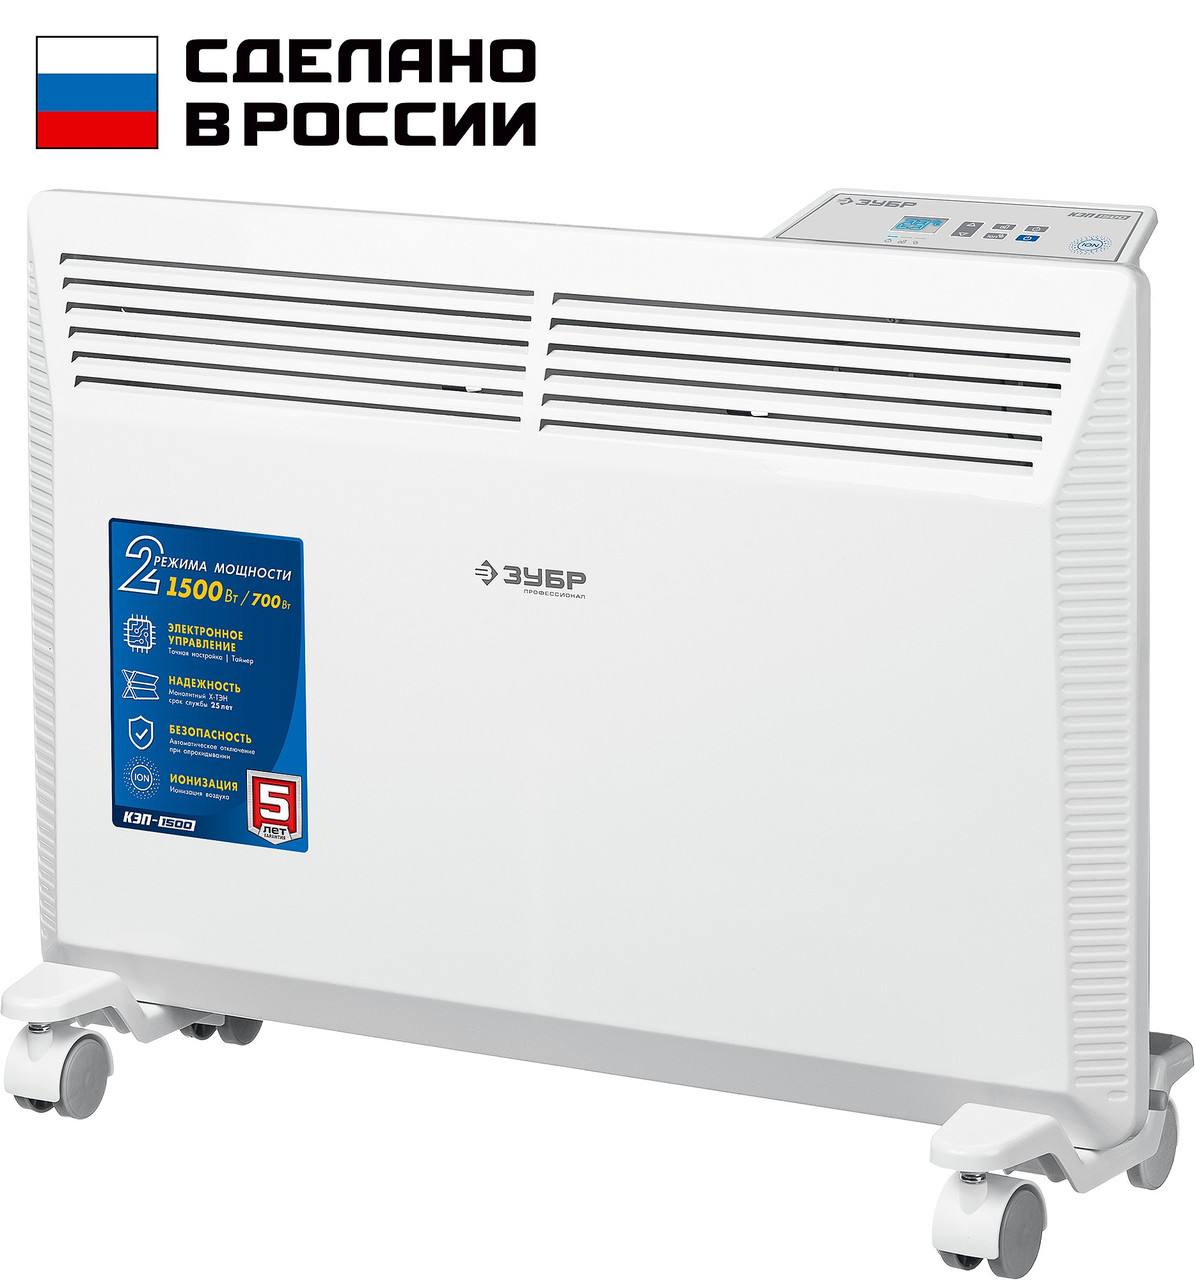 ЗУБР  ПРО серия 1.5 кВт, электрический конвектор, Профессионал (КЭП-1500)